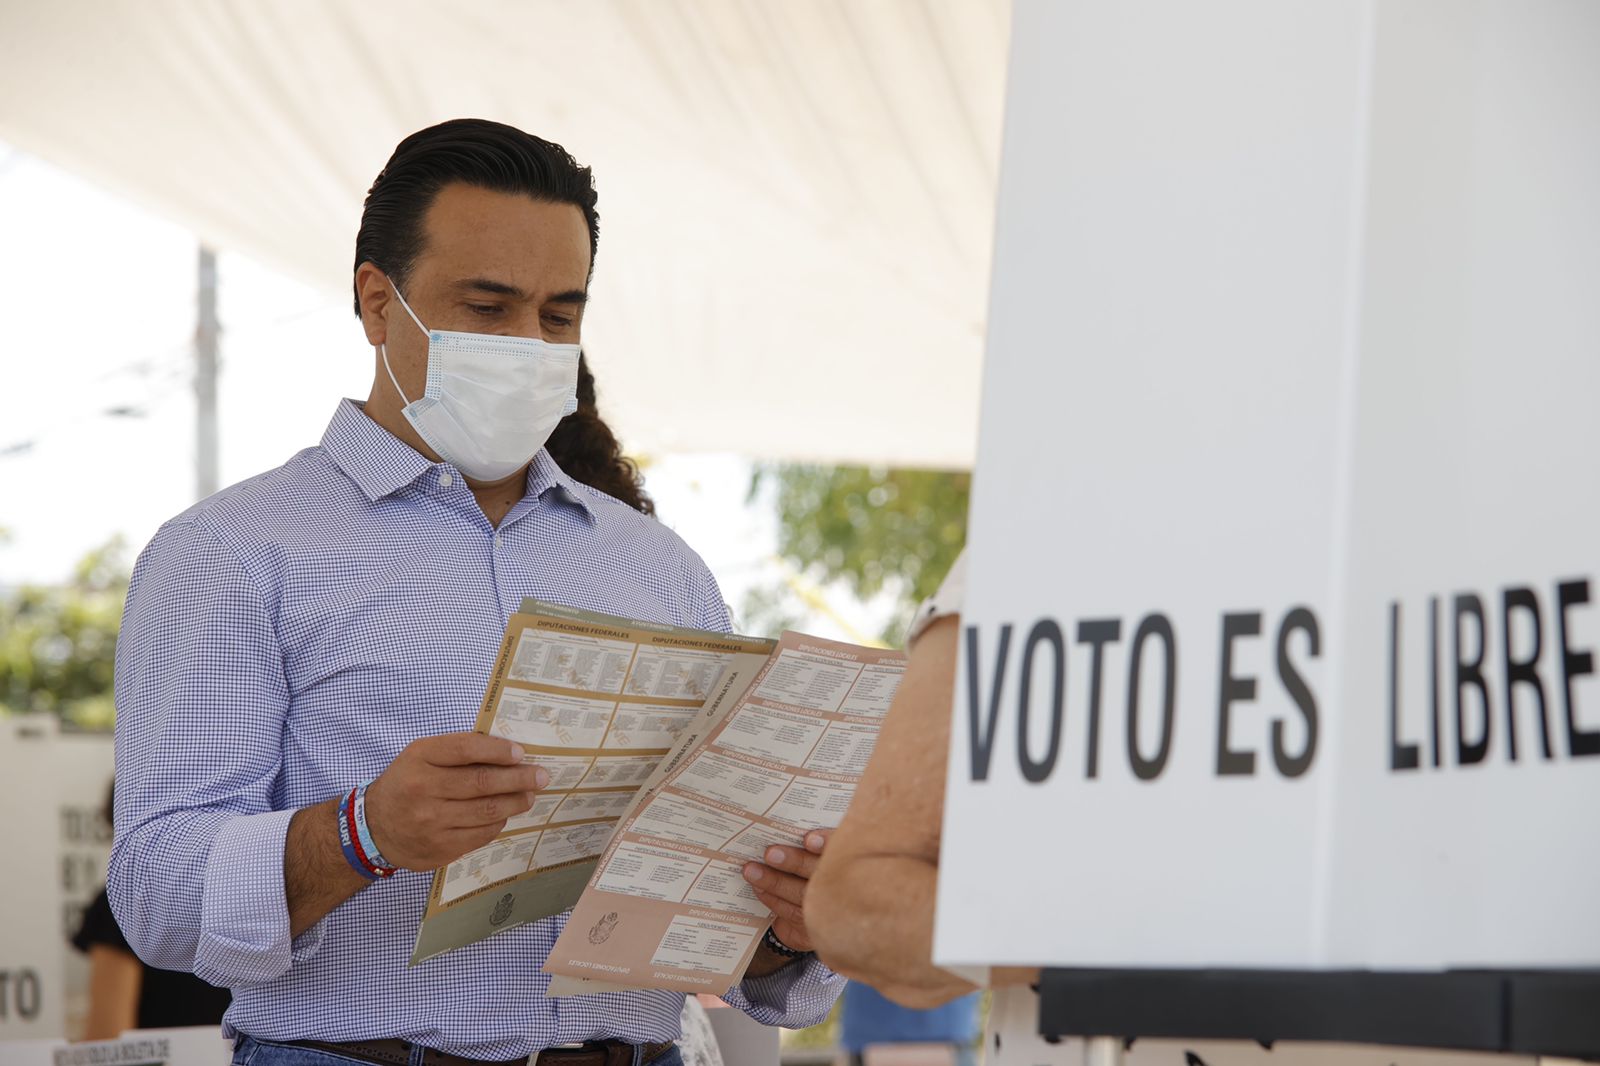 "Espero una gran fiesta democrática", dice Luis Nava antes de emitir su voto